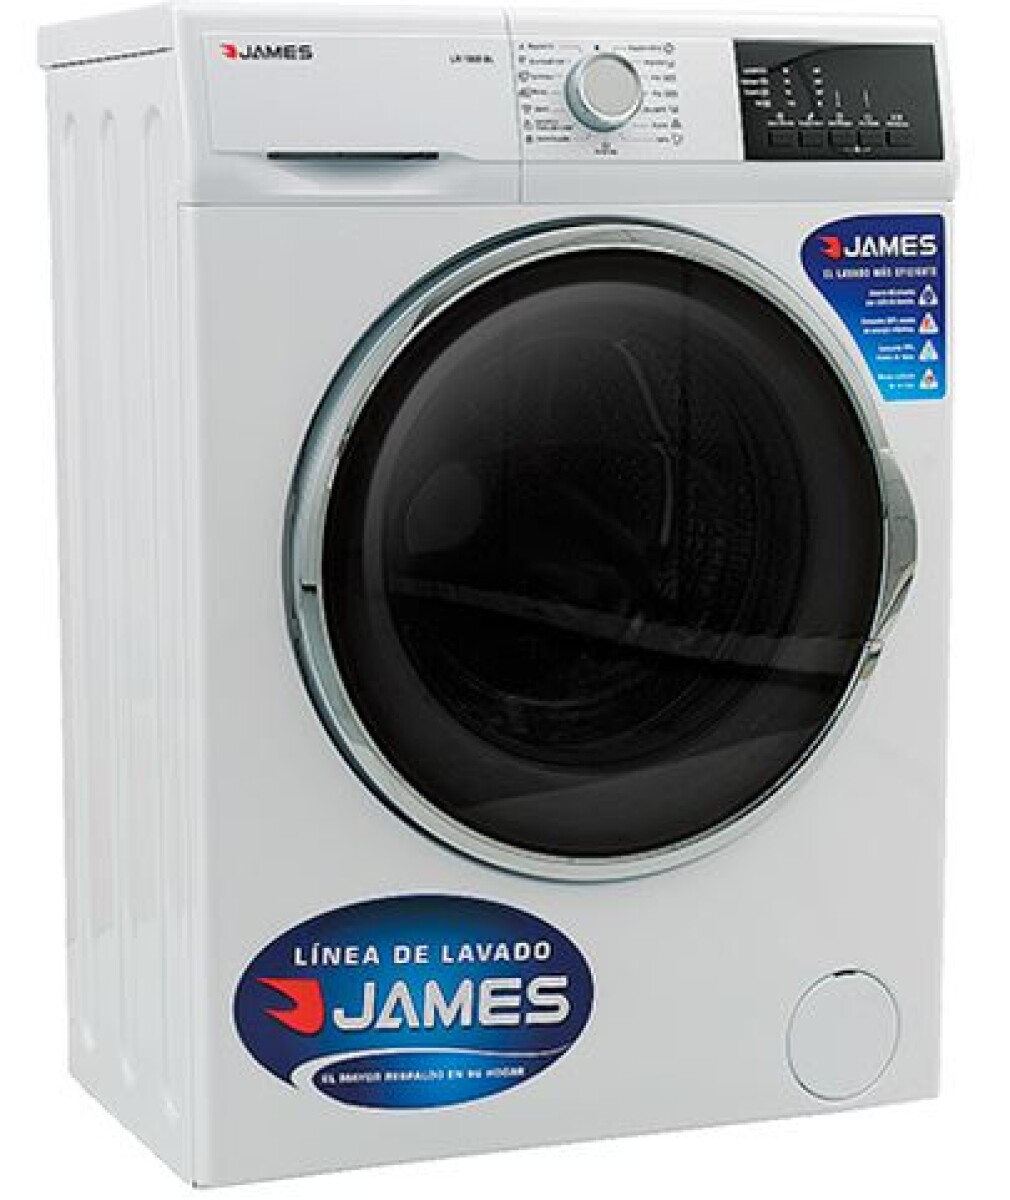 Lavarropas automático James LR 1008 blanco 6kg - Sin color 